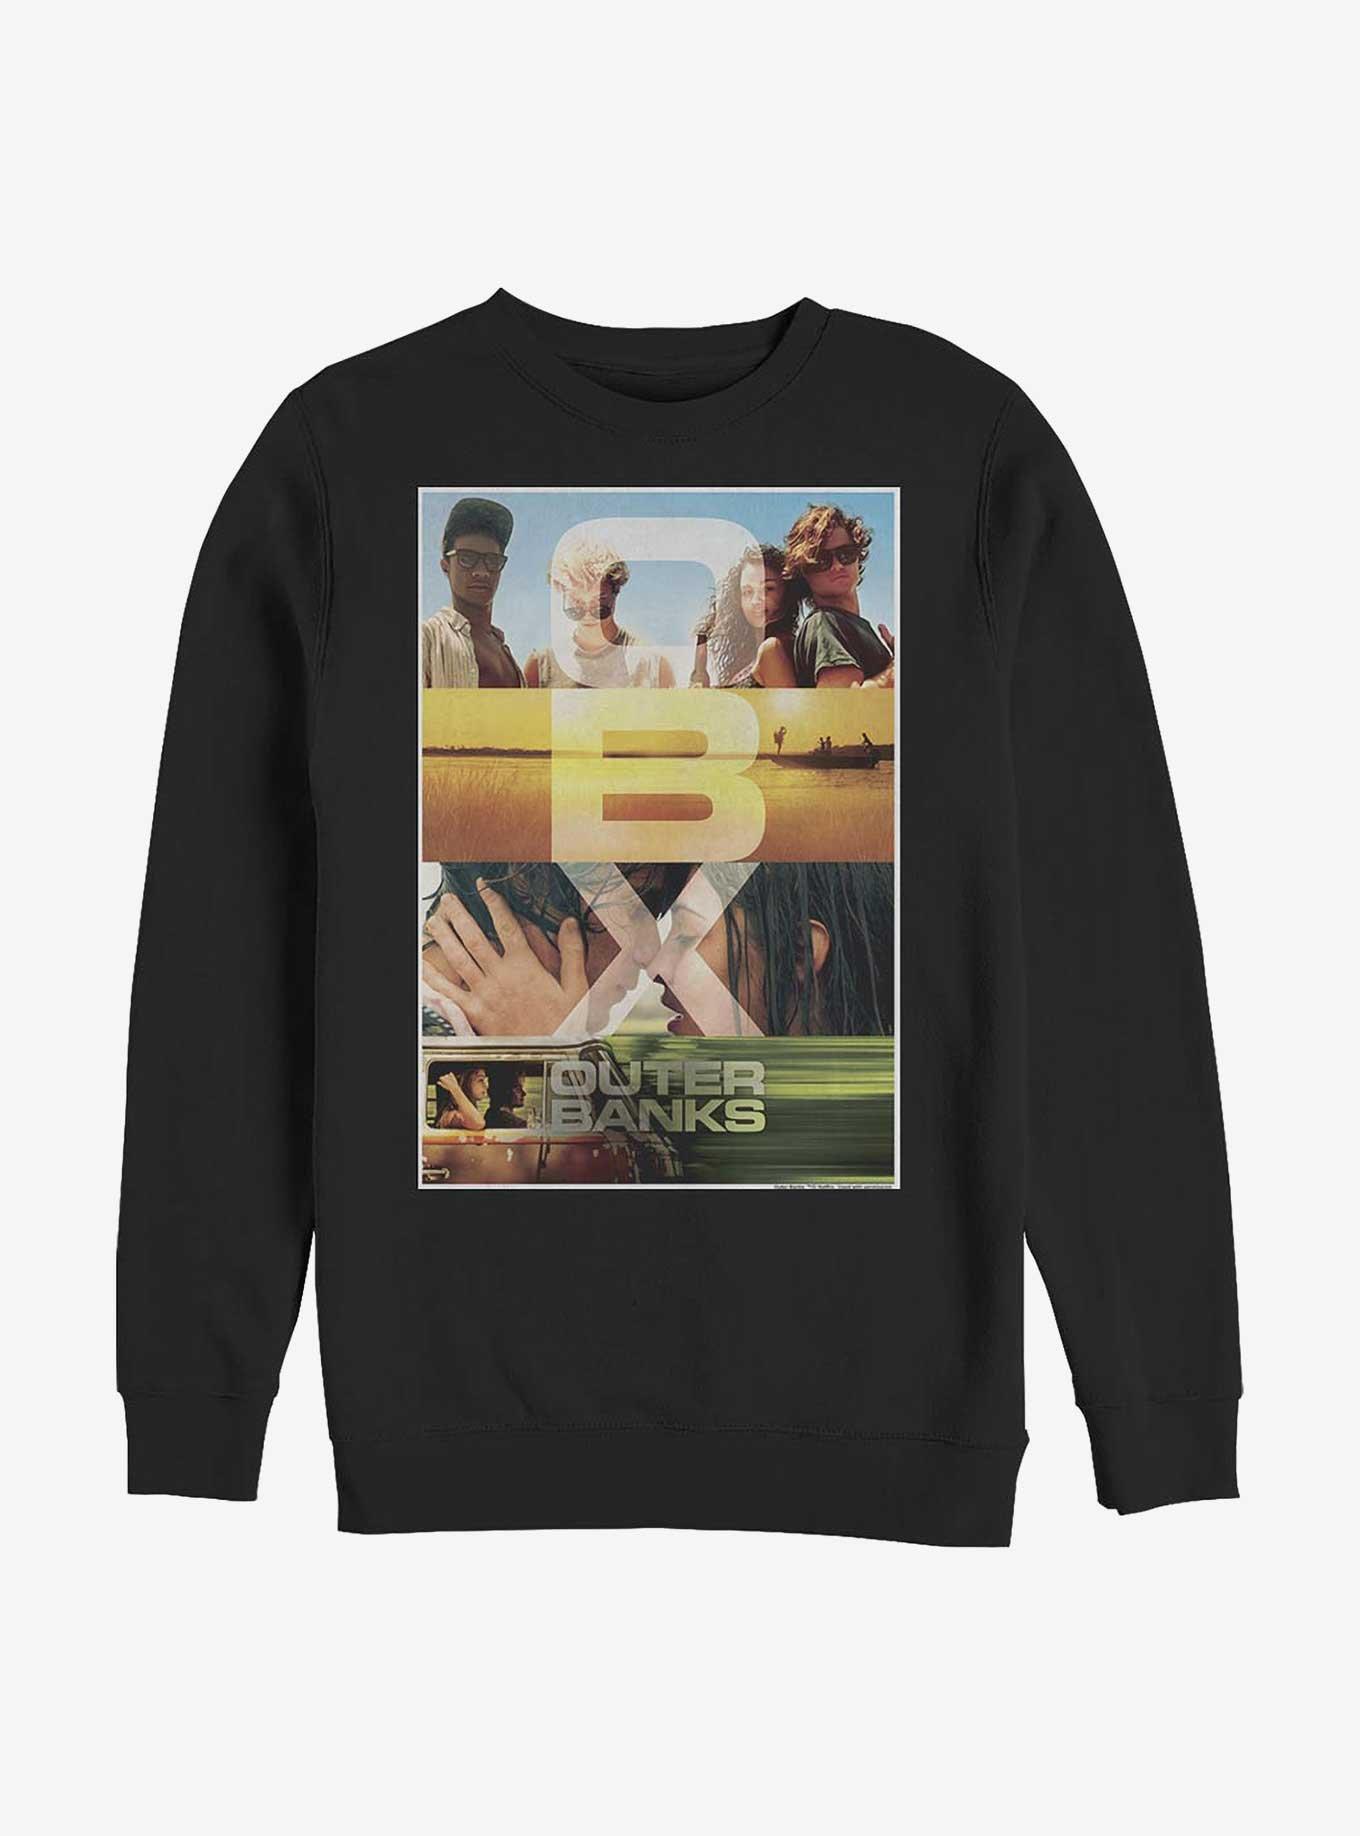 Outer Banks OBX Poster Sweatshirt, BLACK, hi-res